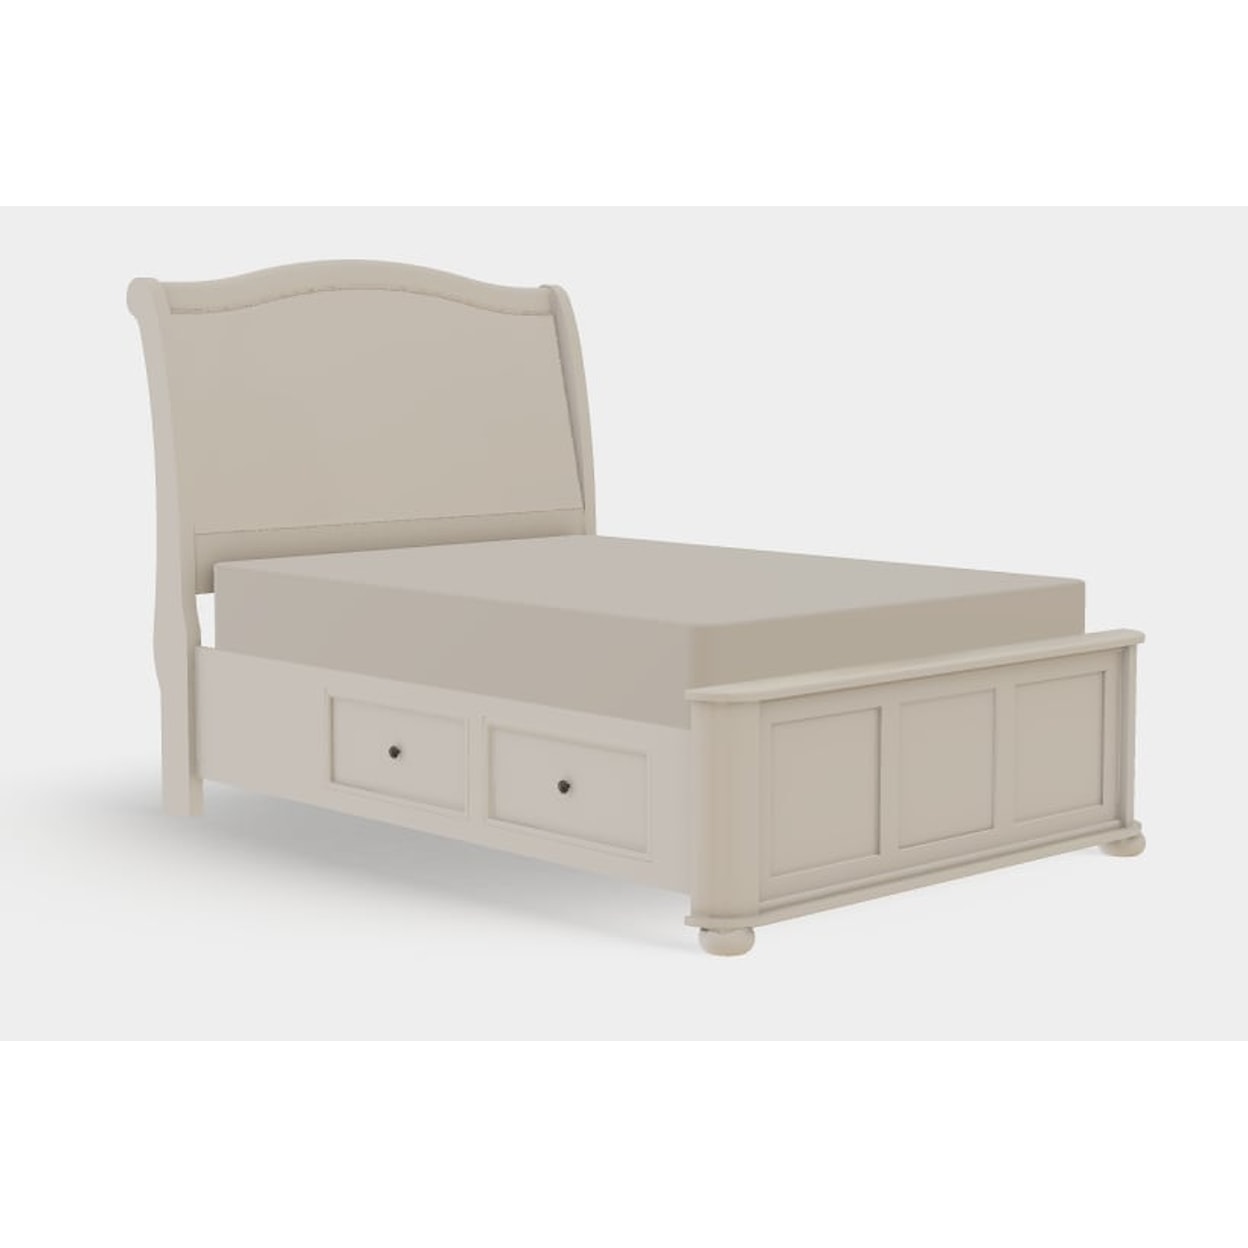 Mavin Kingsport Full Upholstered Bed Left Drawerside